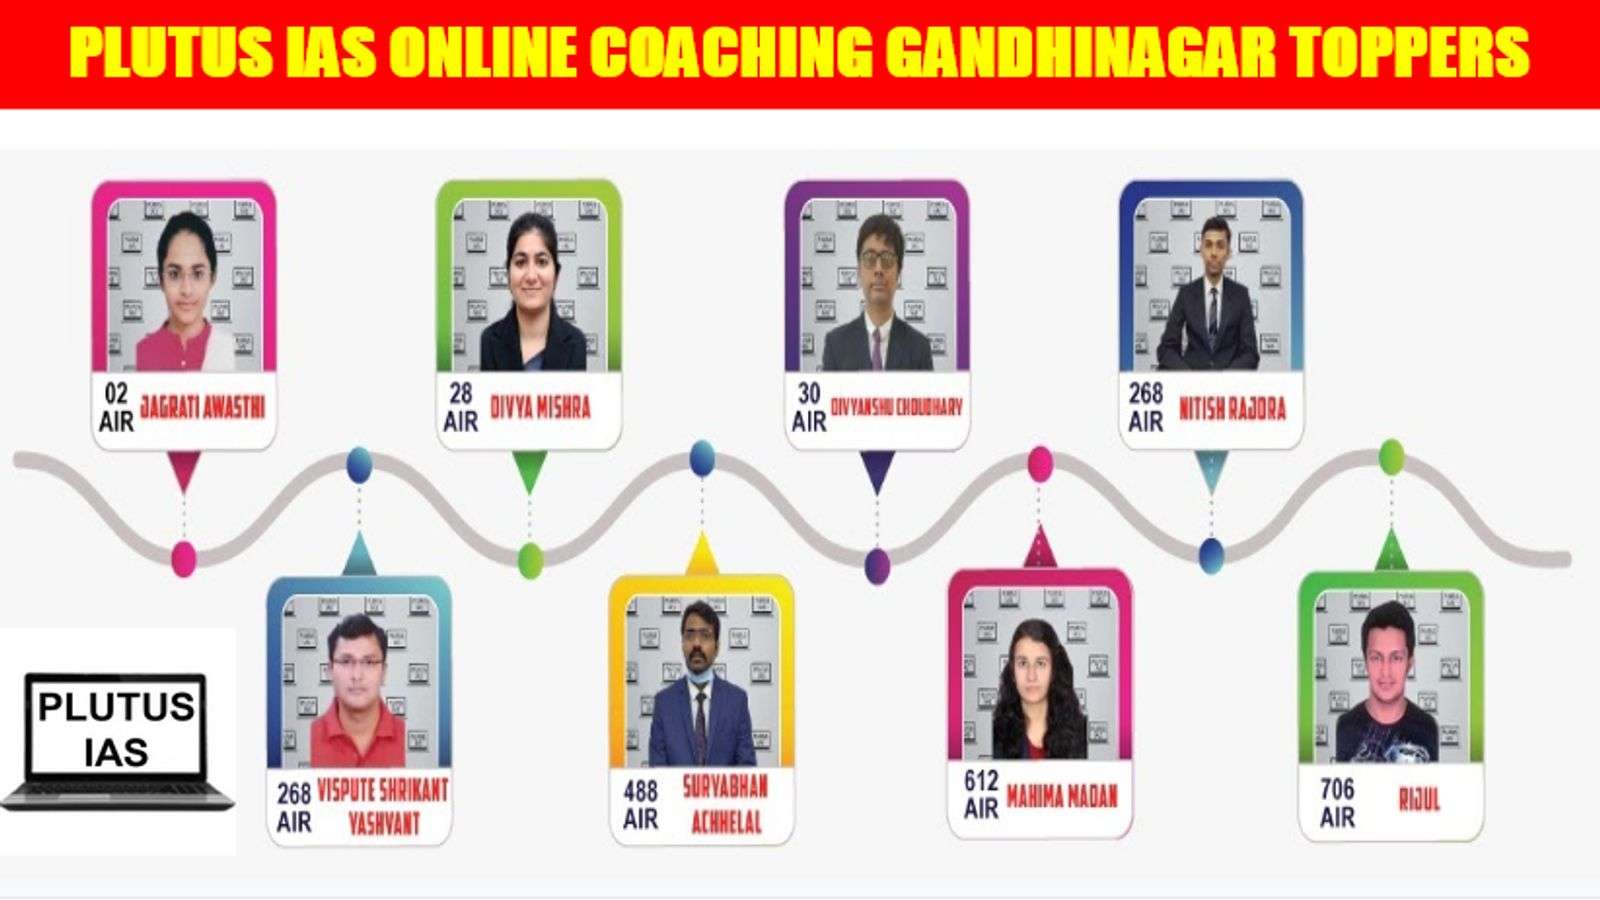 Plutus IAS Online Coaching Gandhinagar Toppers